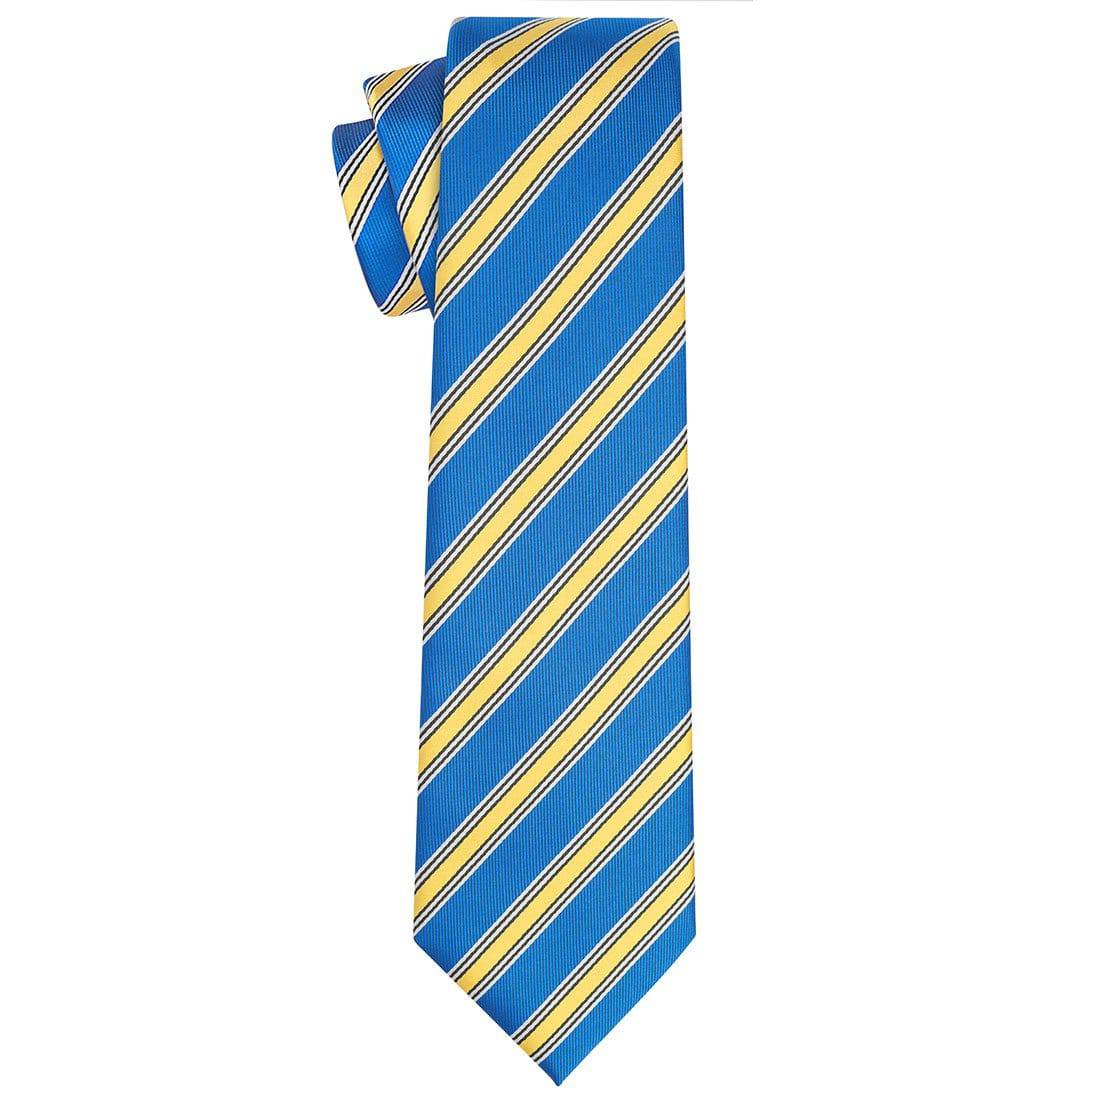 US Air Force Tie - Tie, bowtie, pocket square  | Kissties